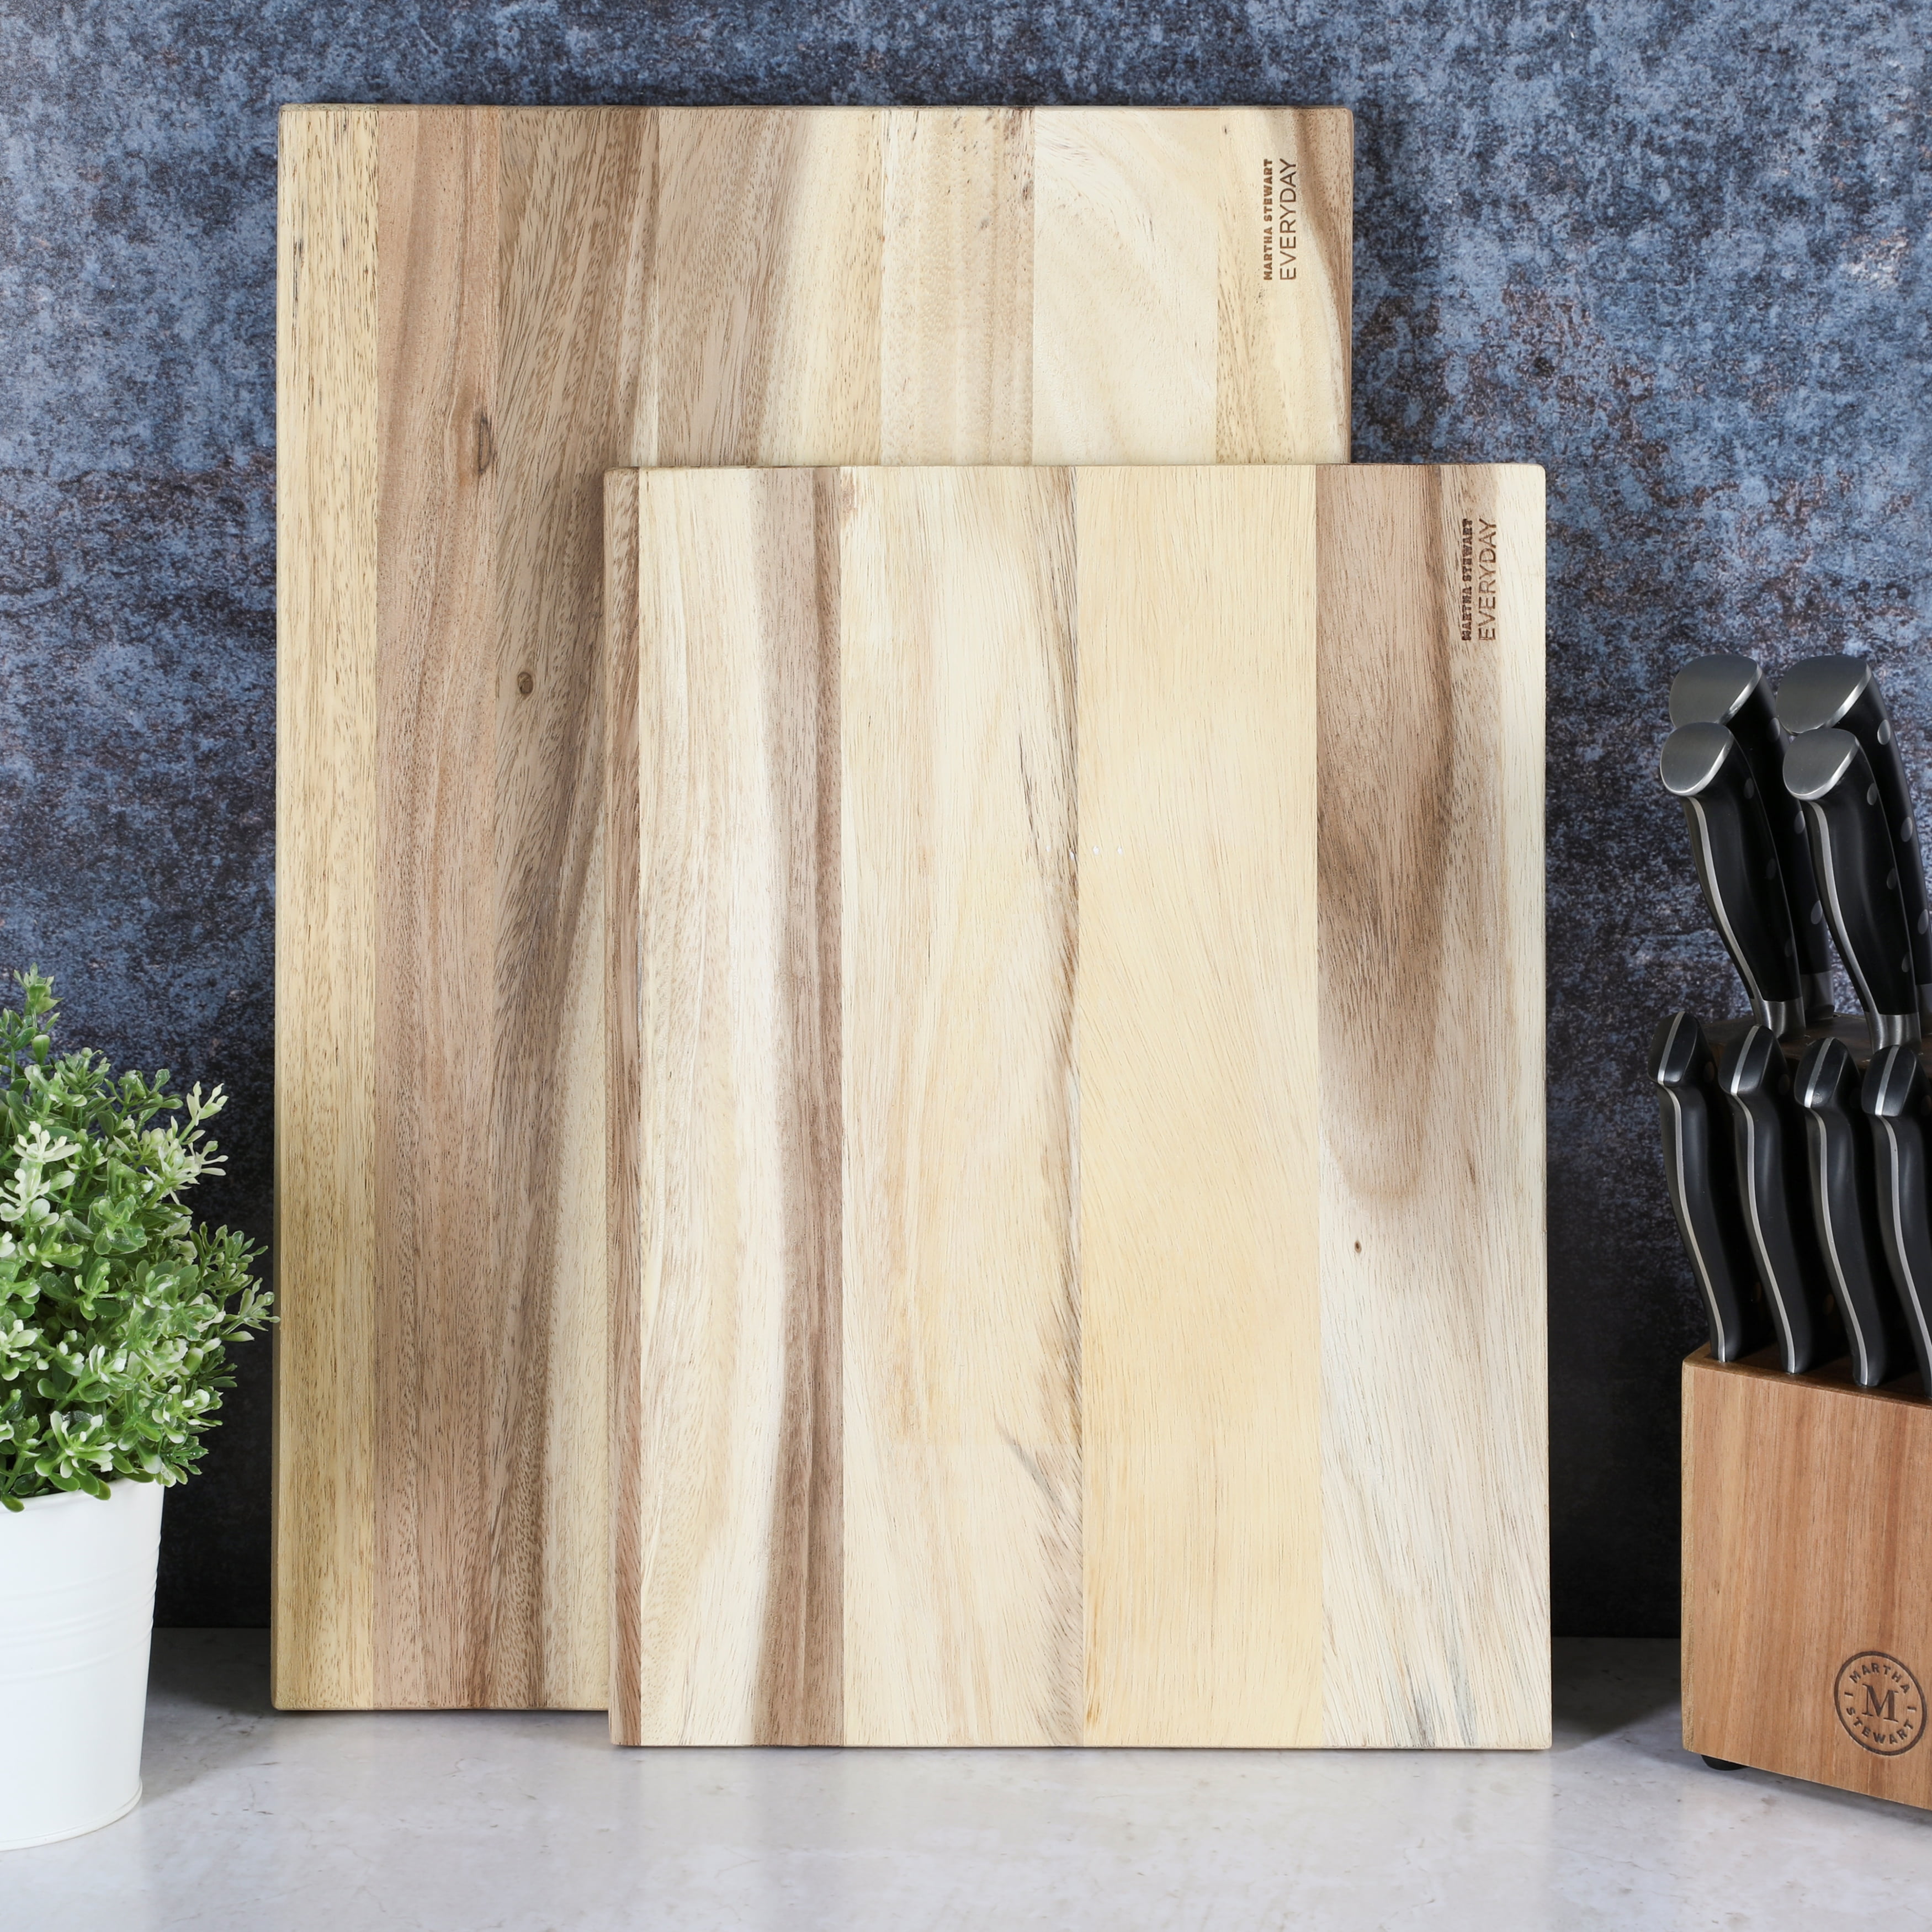 Martha Stewart Beech Wood Cutting Board, 14 x 11 in - Gerbes Super Markets